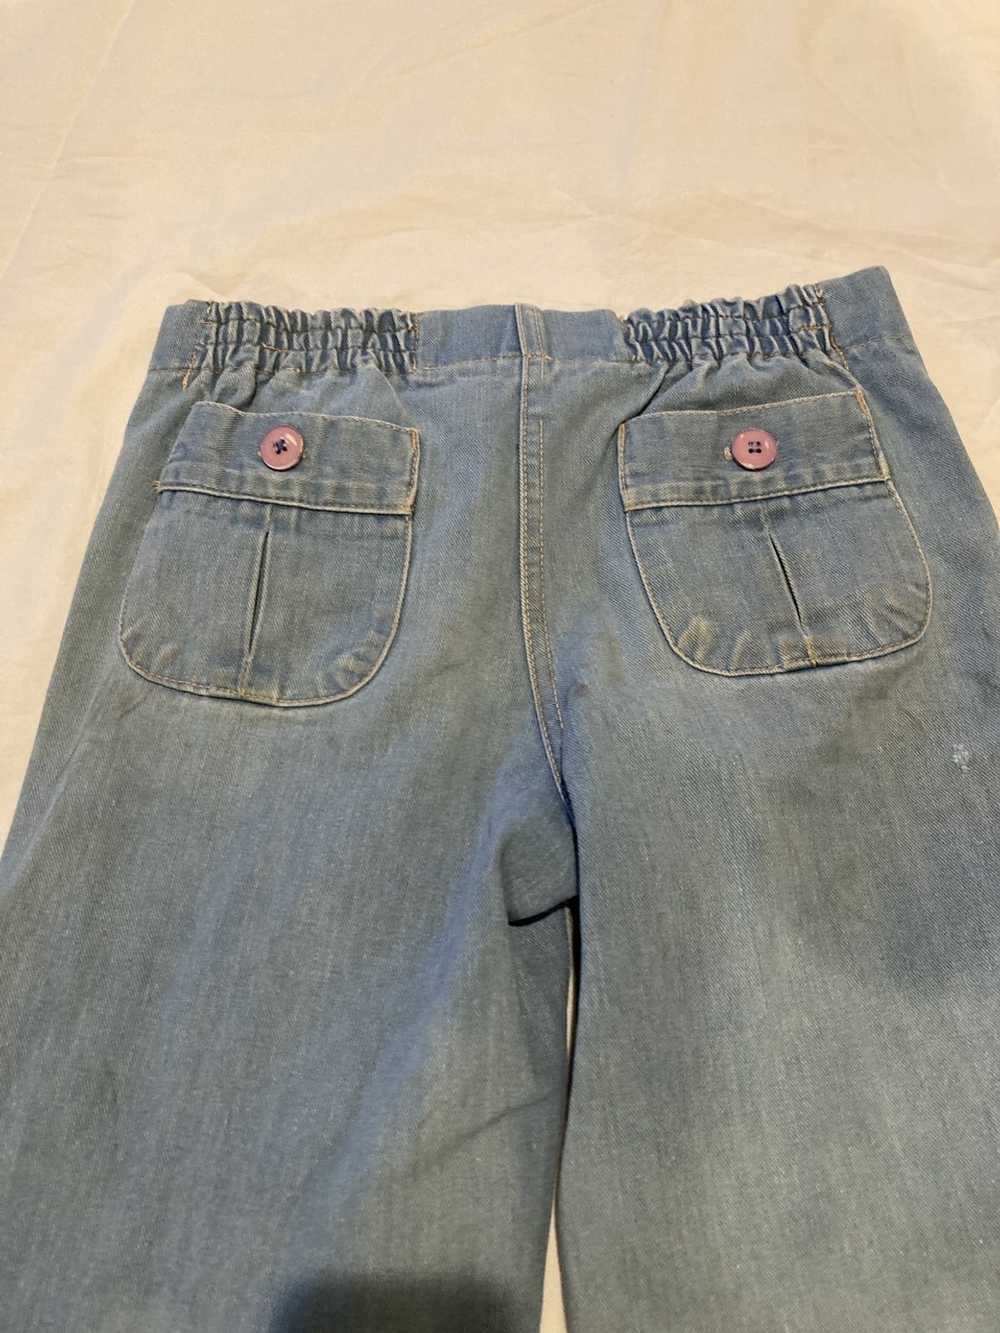 Vintage Sailor bell bottom denim jeans - image 3